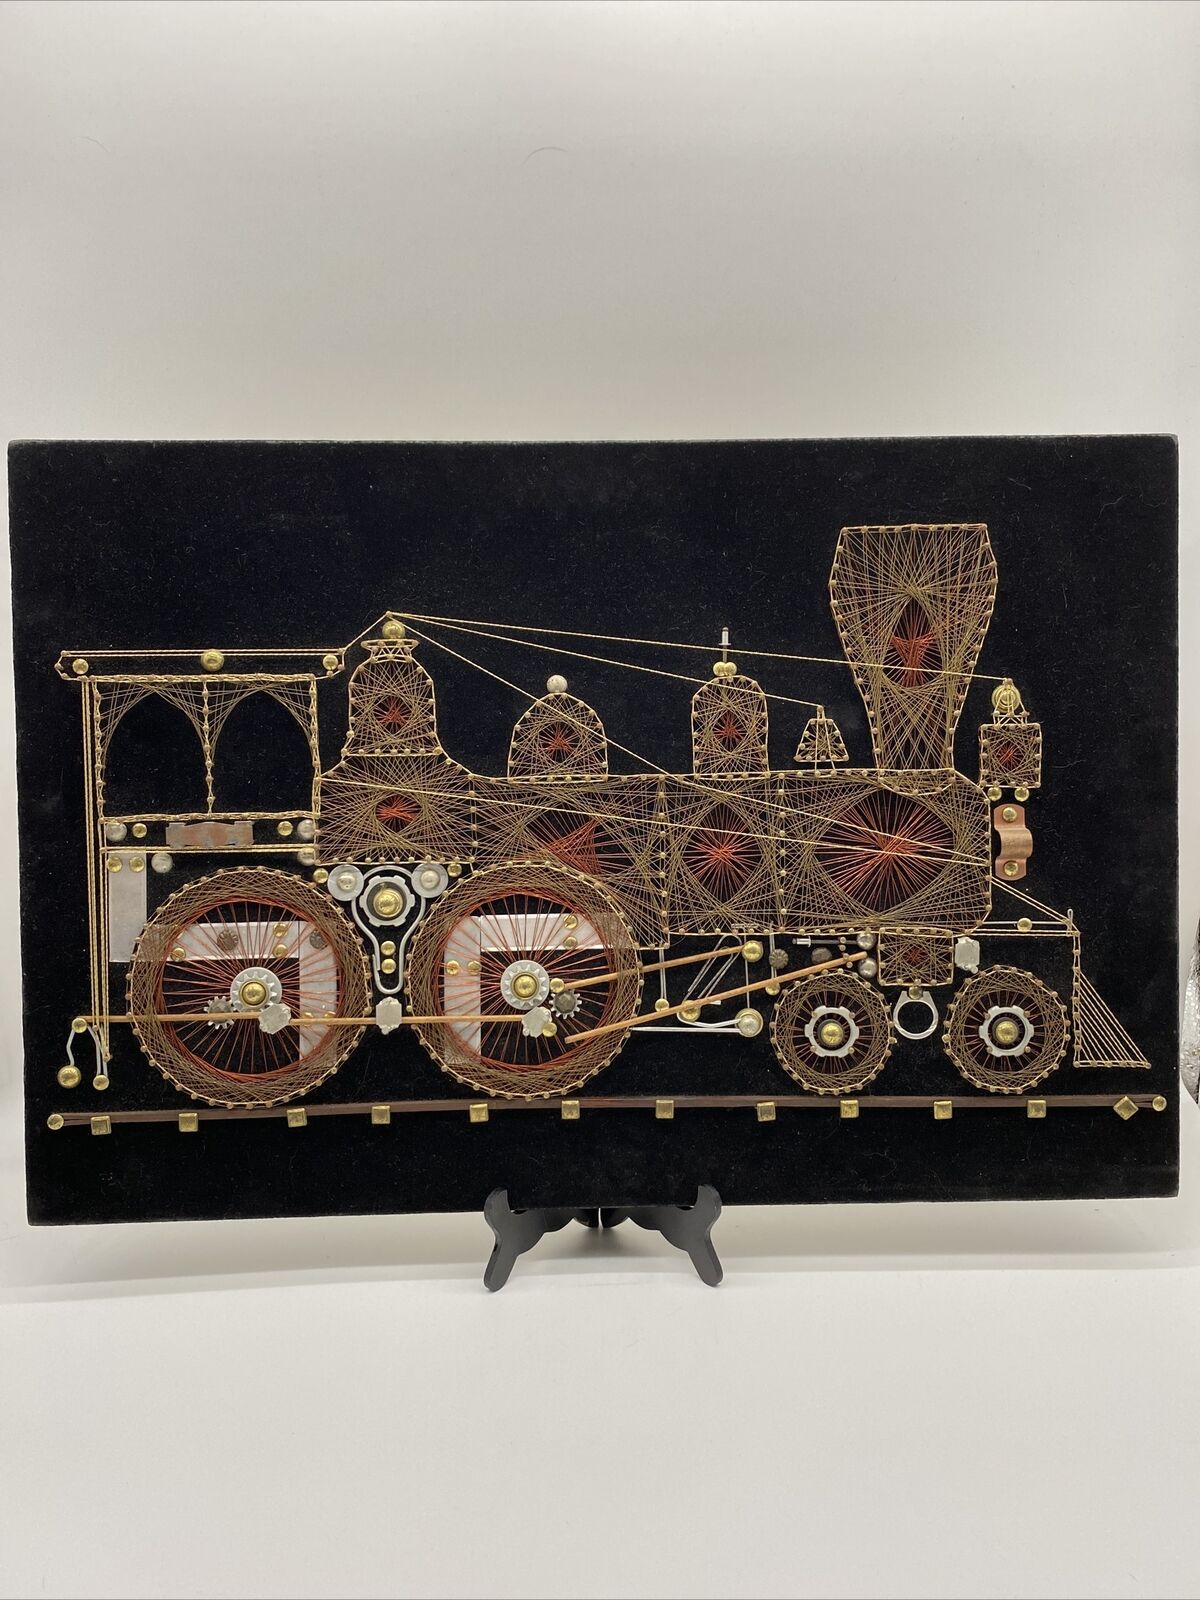 VTG handmade locomotive train engine copper wire wall art on Black velvet